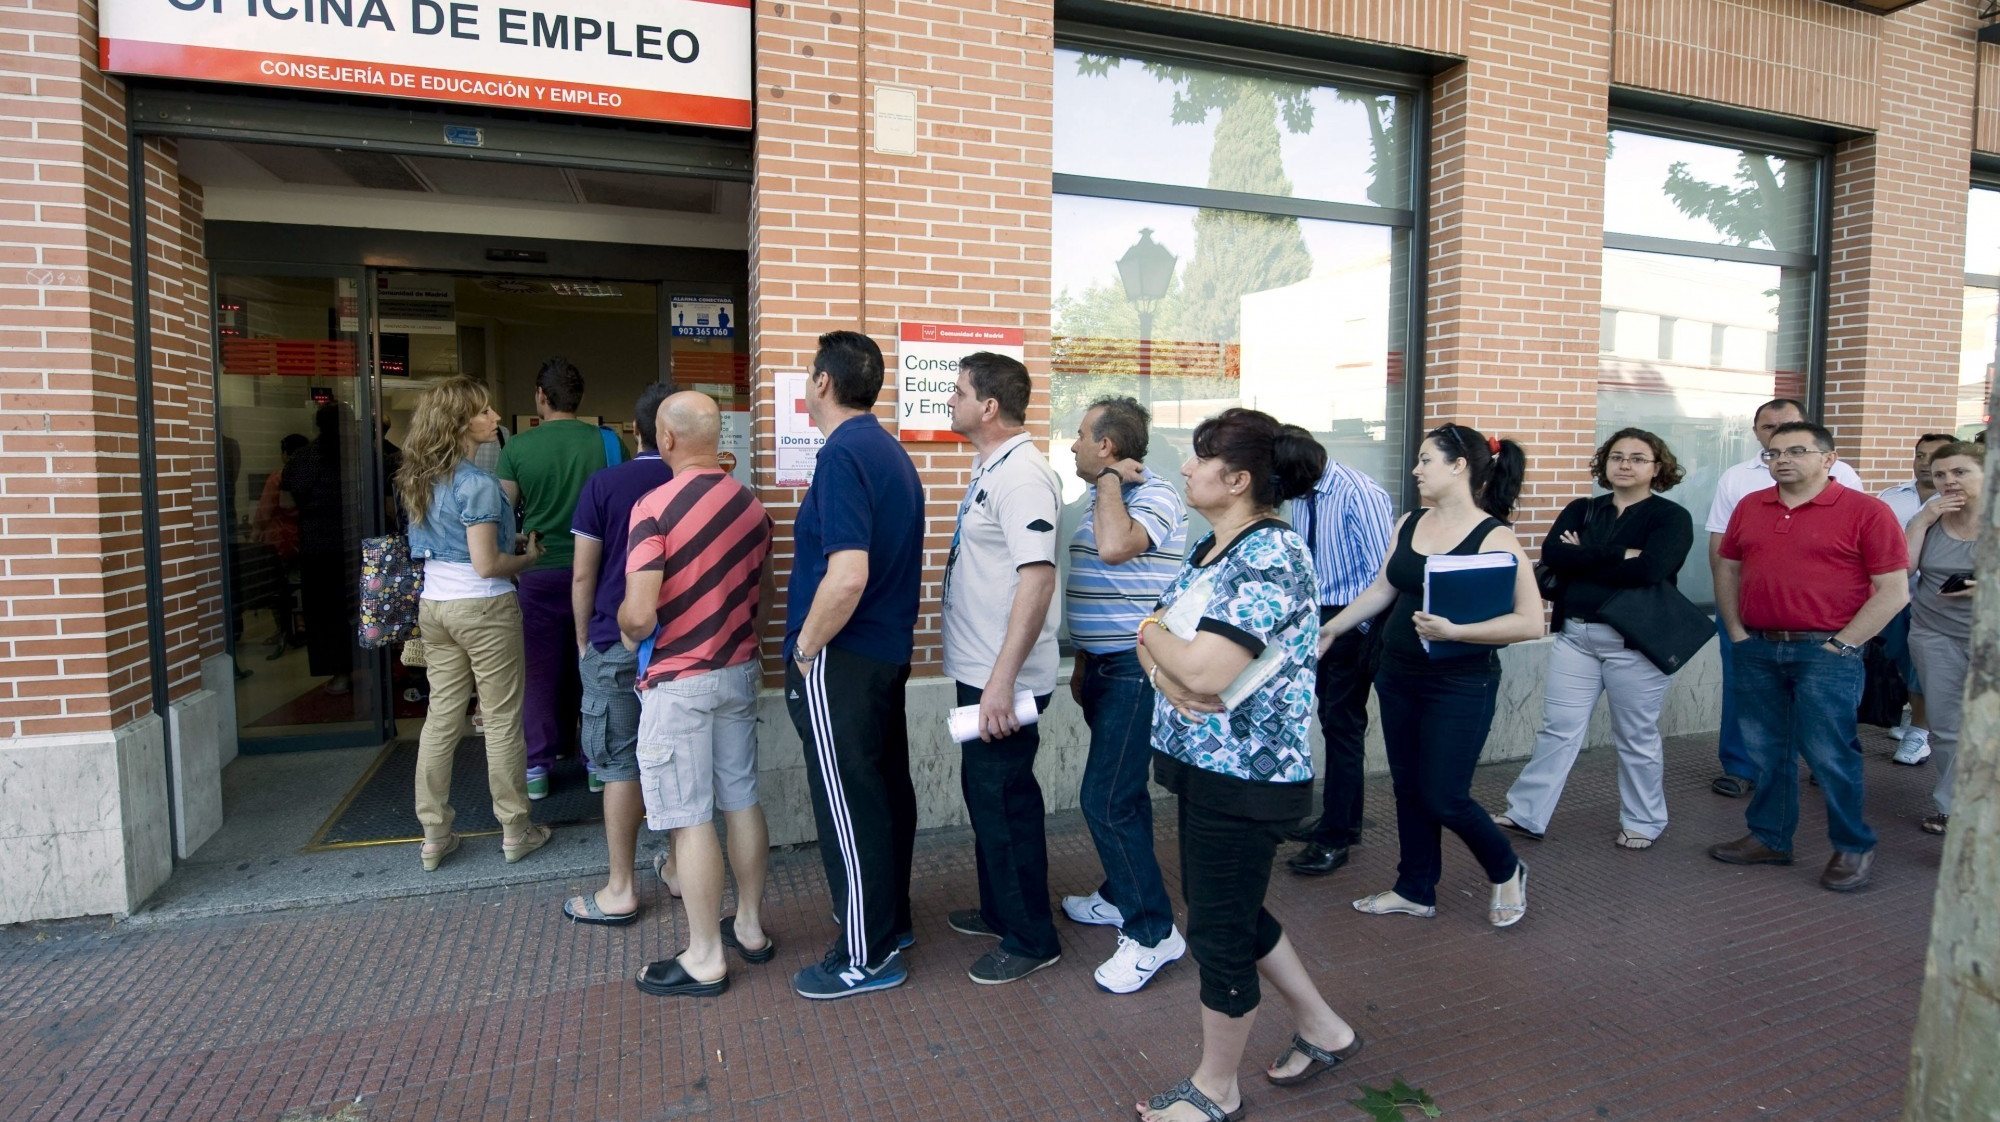 Entre os Estados-membros, a Espanha registou a maior taxa de desemprego